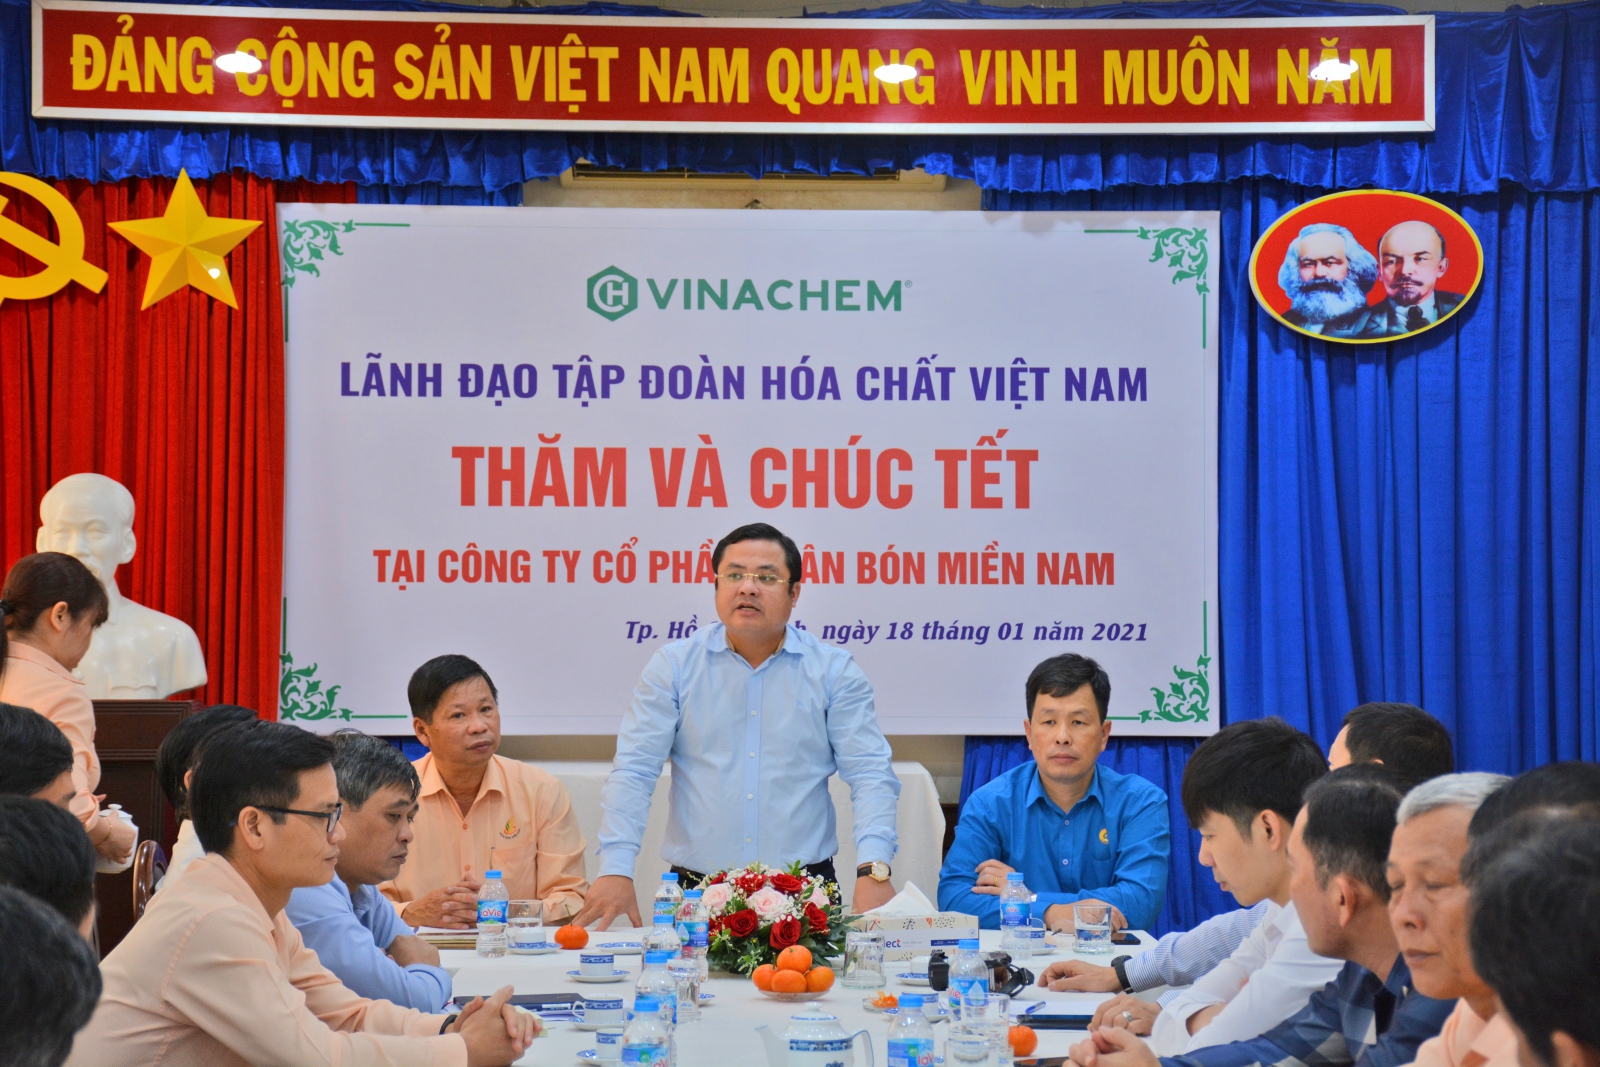 Đồng chí Phùng Quang Hiệp – Phó bí thư Đảng ủy, thành viên Hội đồng thành viên, Tổng Giám đốc Tập đoàn Hóa chất Việt Nam thay mặt ban lãnh đạo Tập đoàn ra chỉ đạo, định hướng cho Công ty trong thời gian tới.